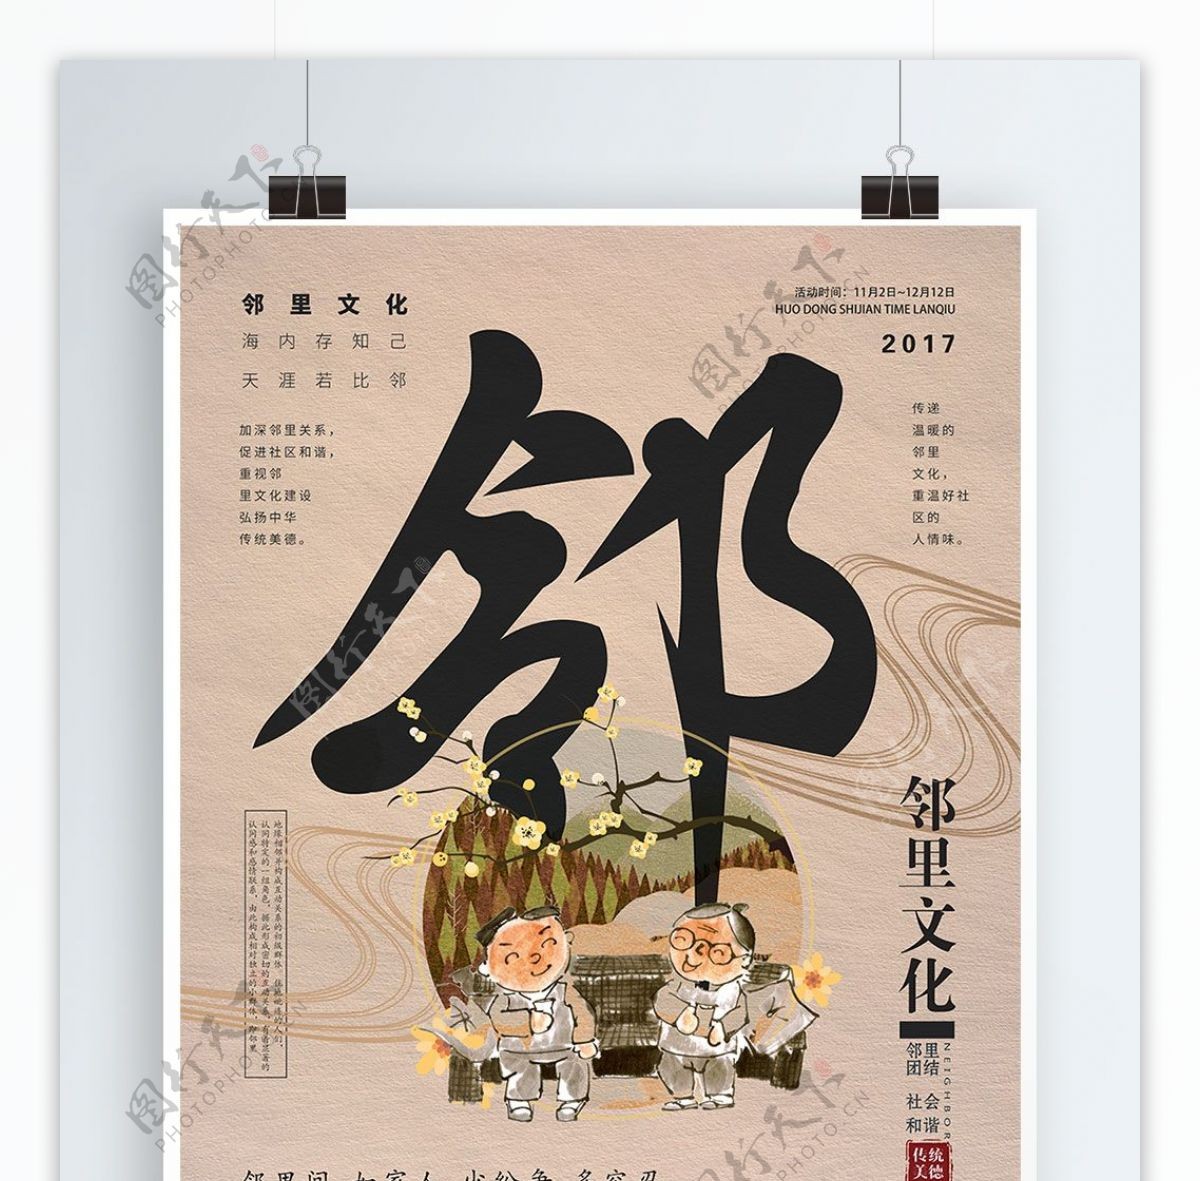 米色中国风简约邻里文化公益海报